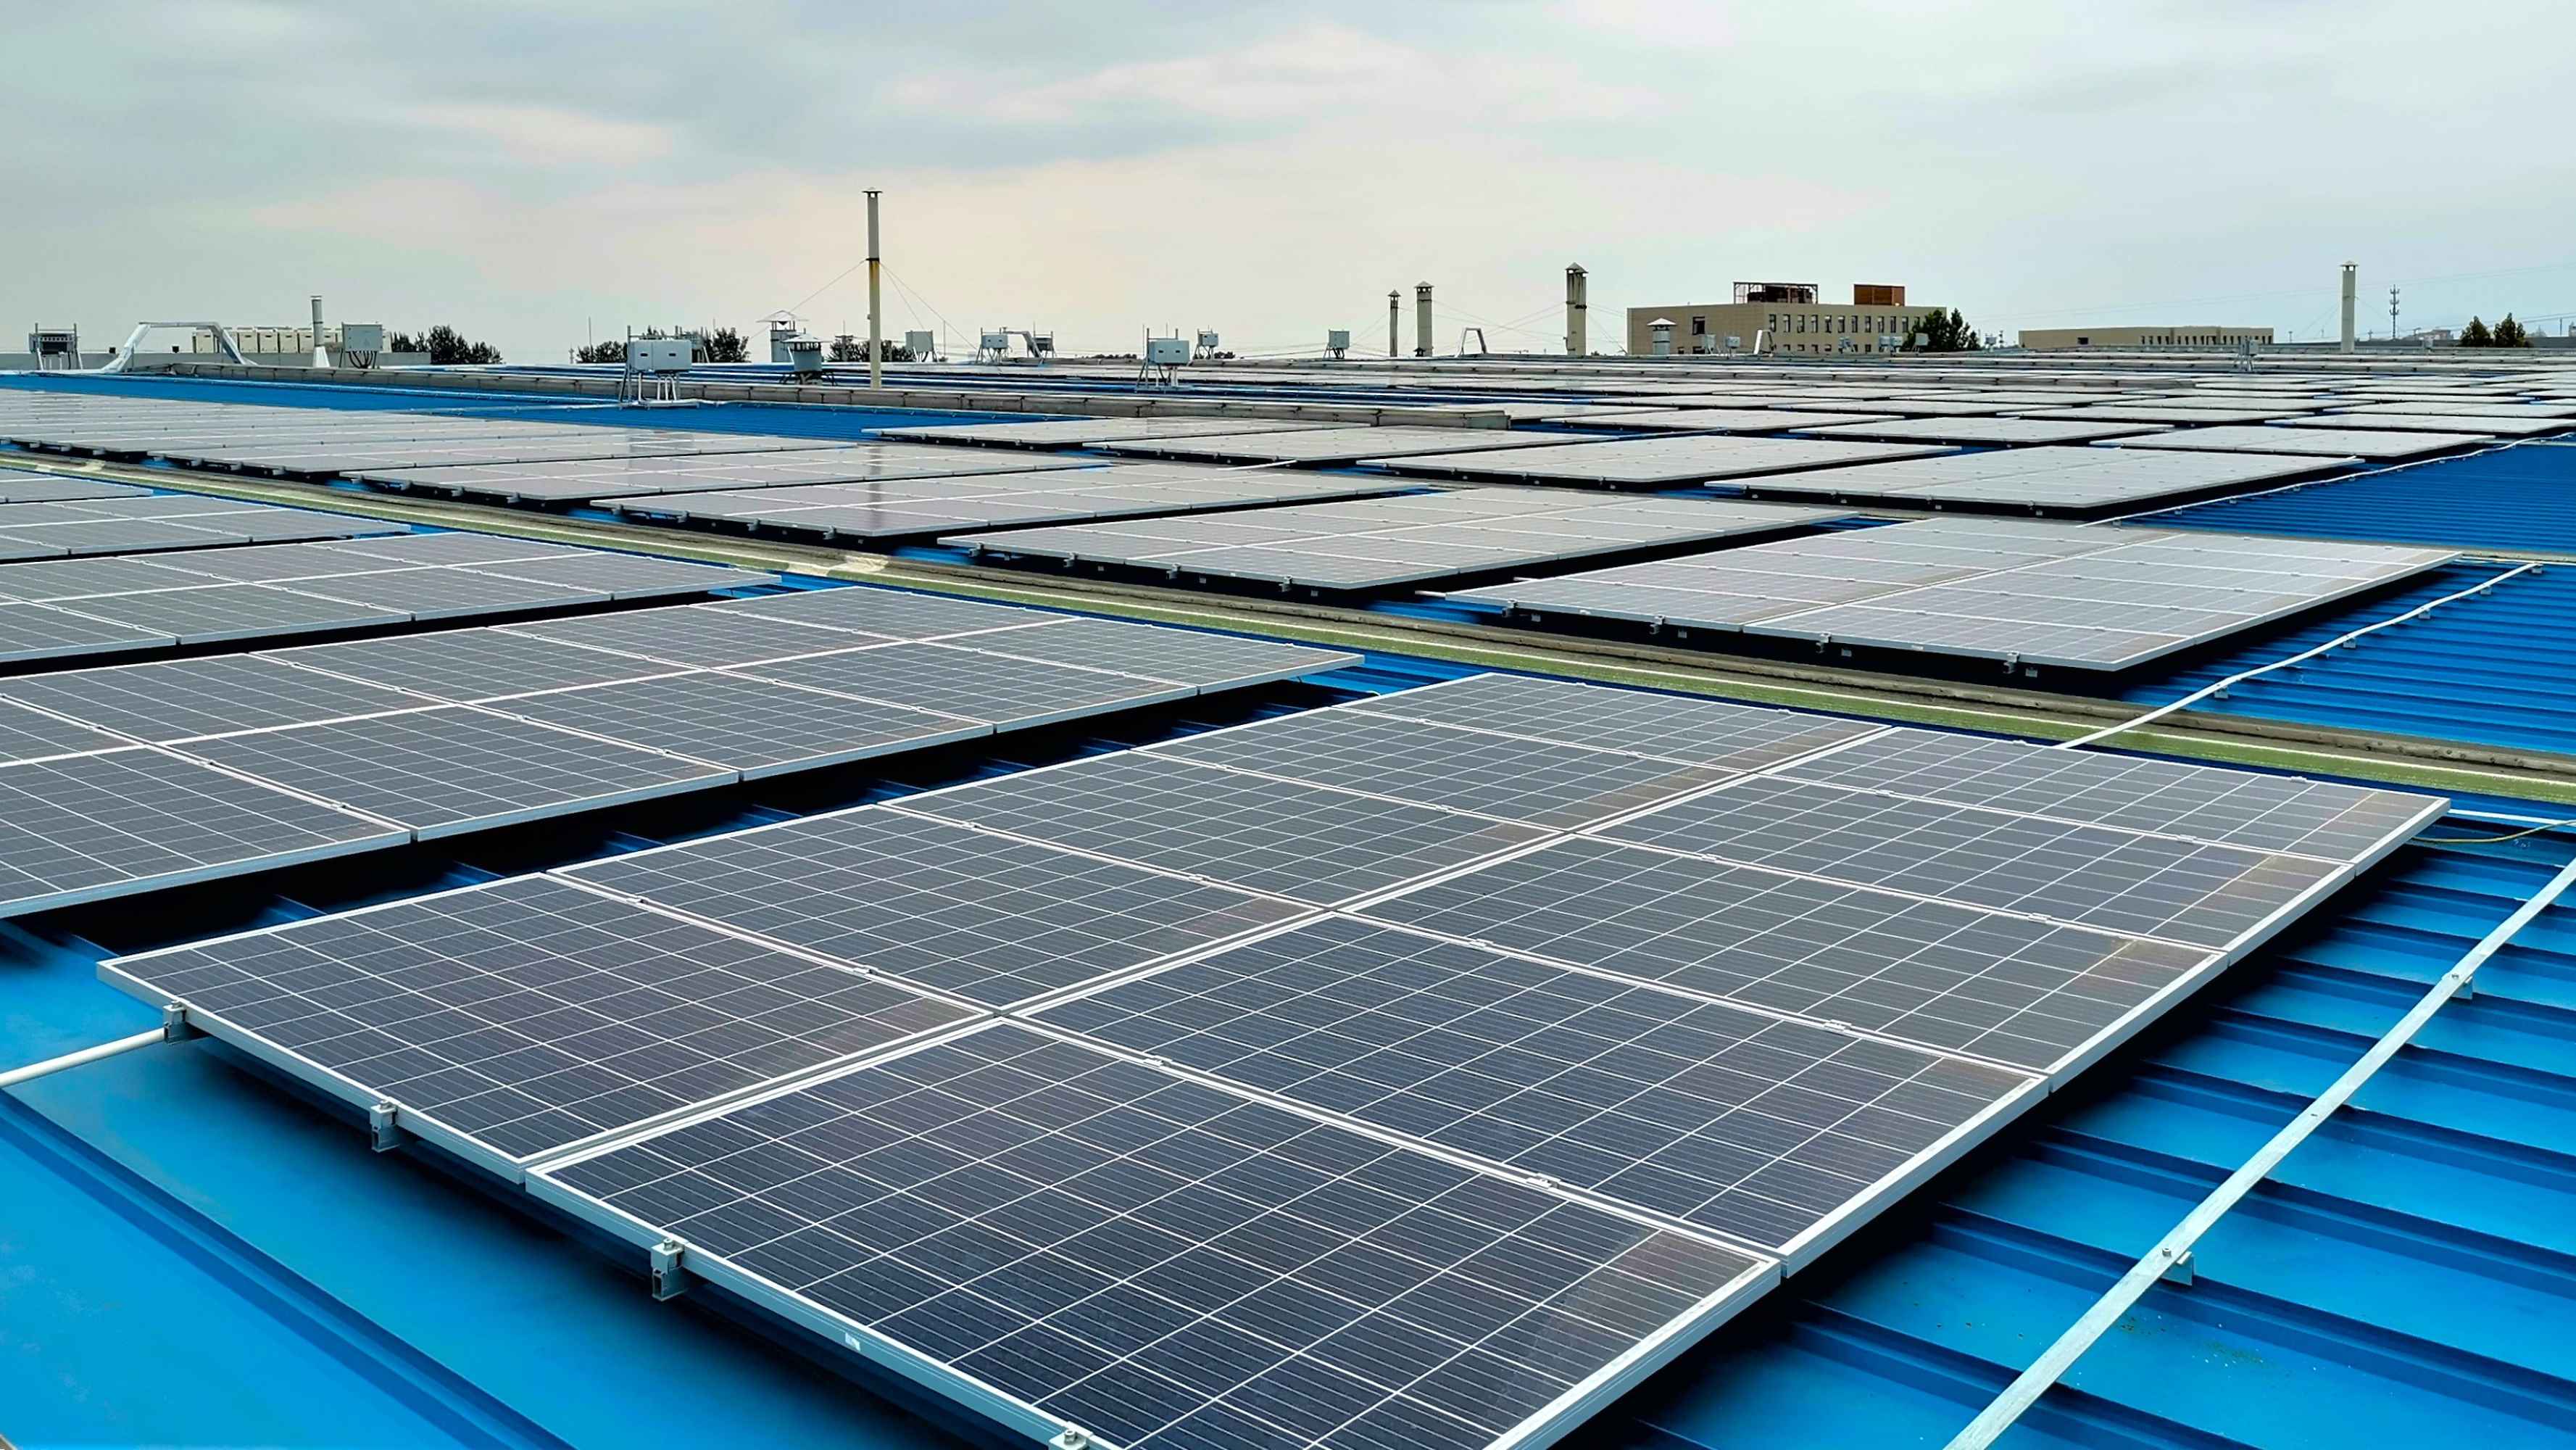 京西集团房山生产基地屋顶光伏发电预计在25年周期内共减少1.8万吨二氧化碳排放.jpg